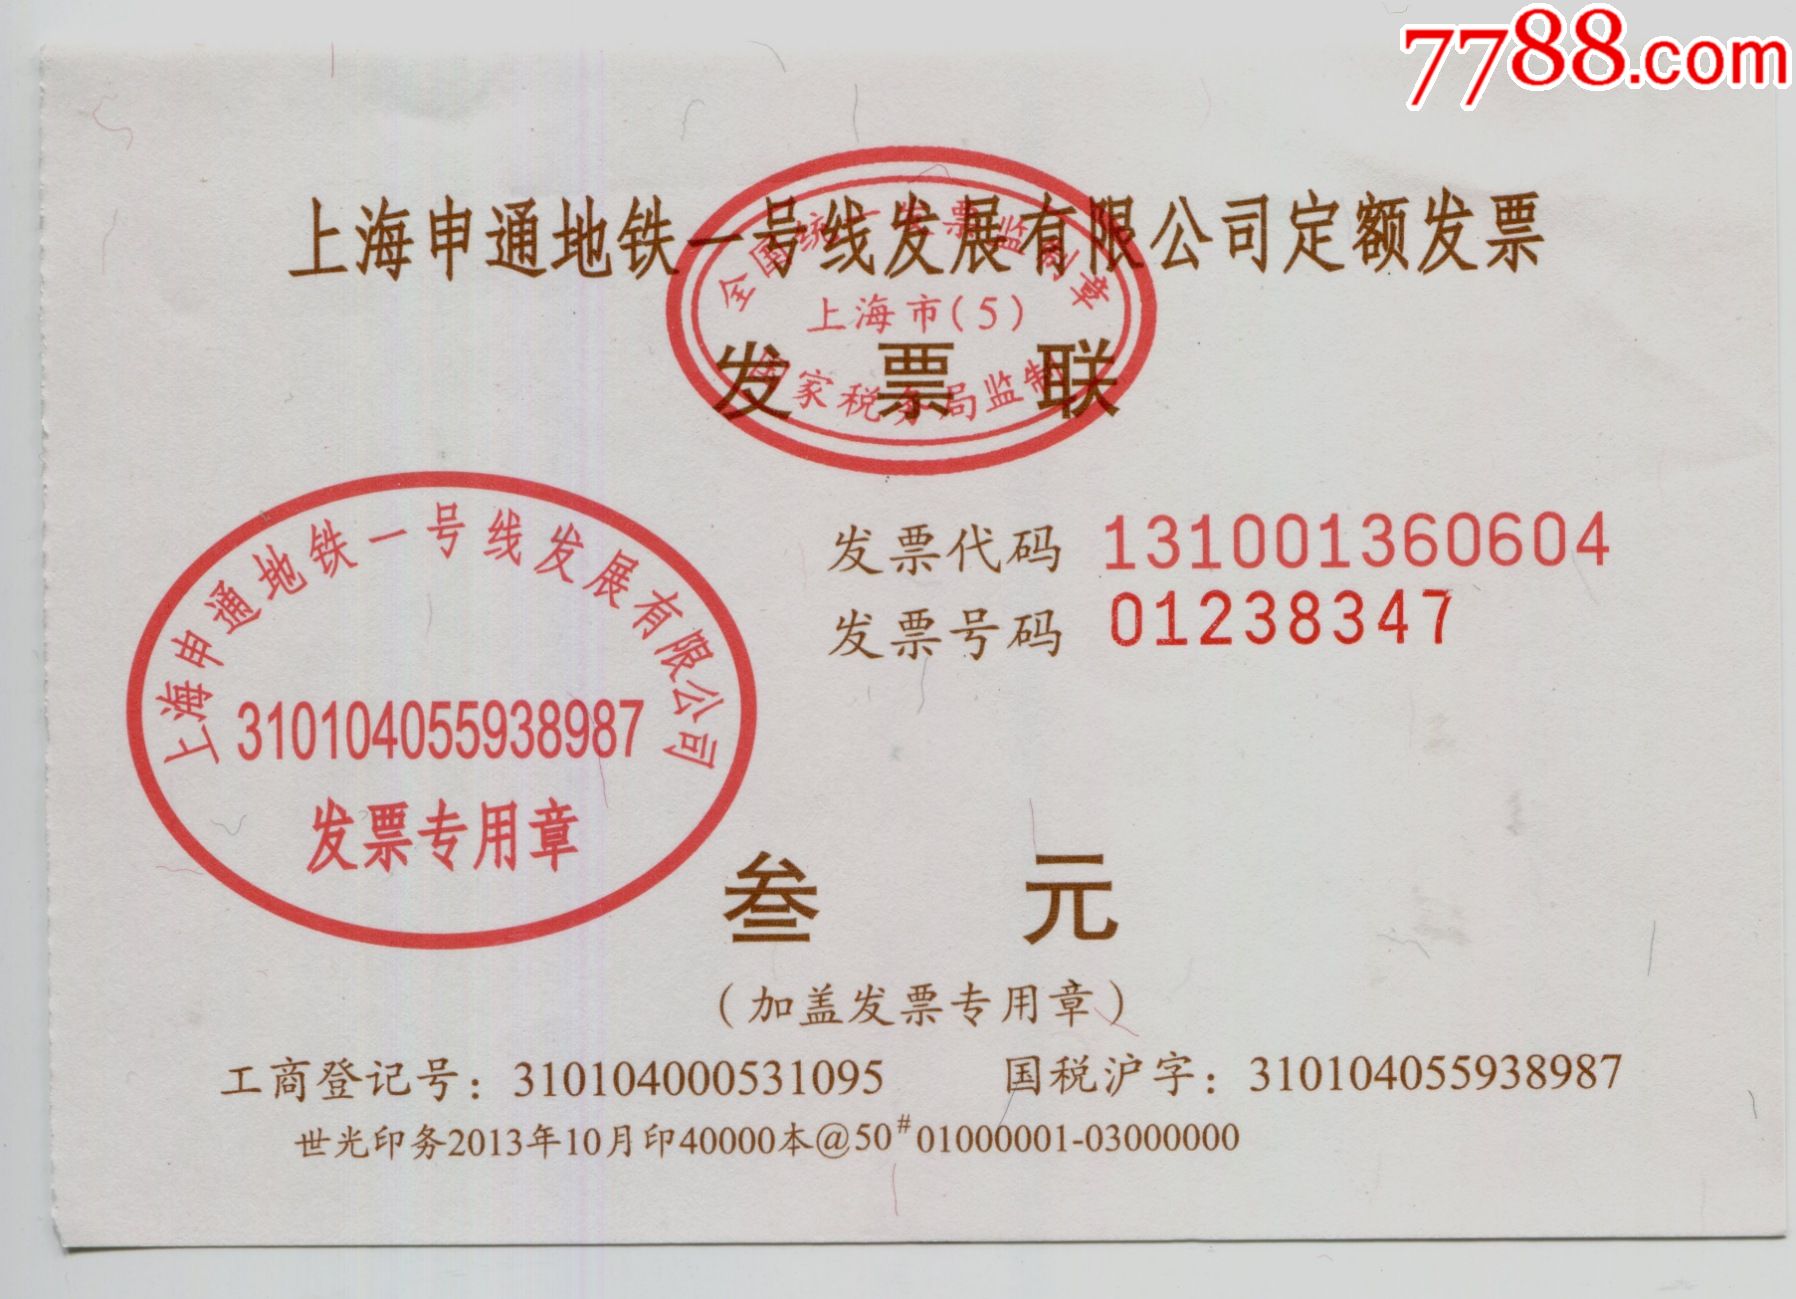 上海申通地铁一号发展有限公司:面值:3元,流水号2013